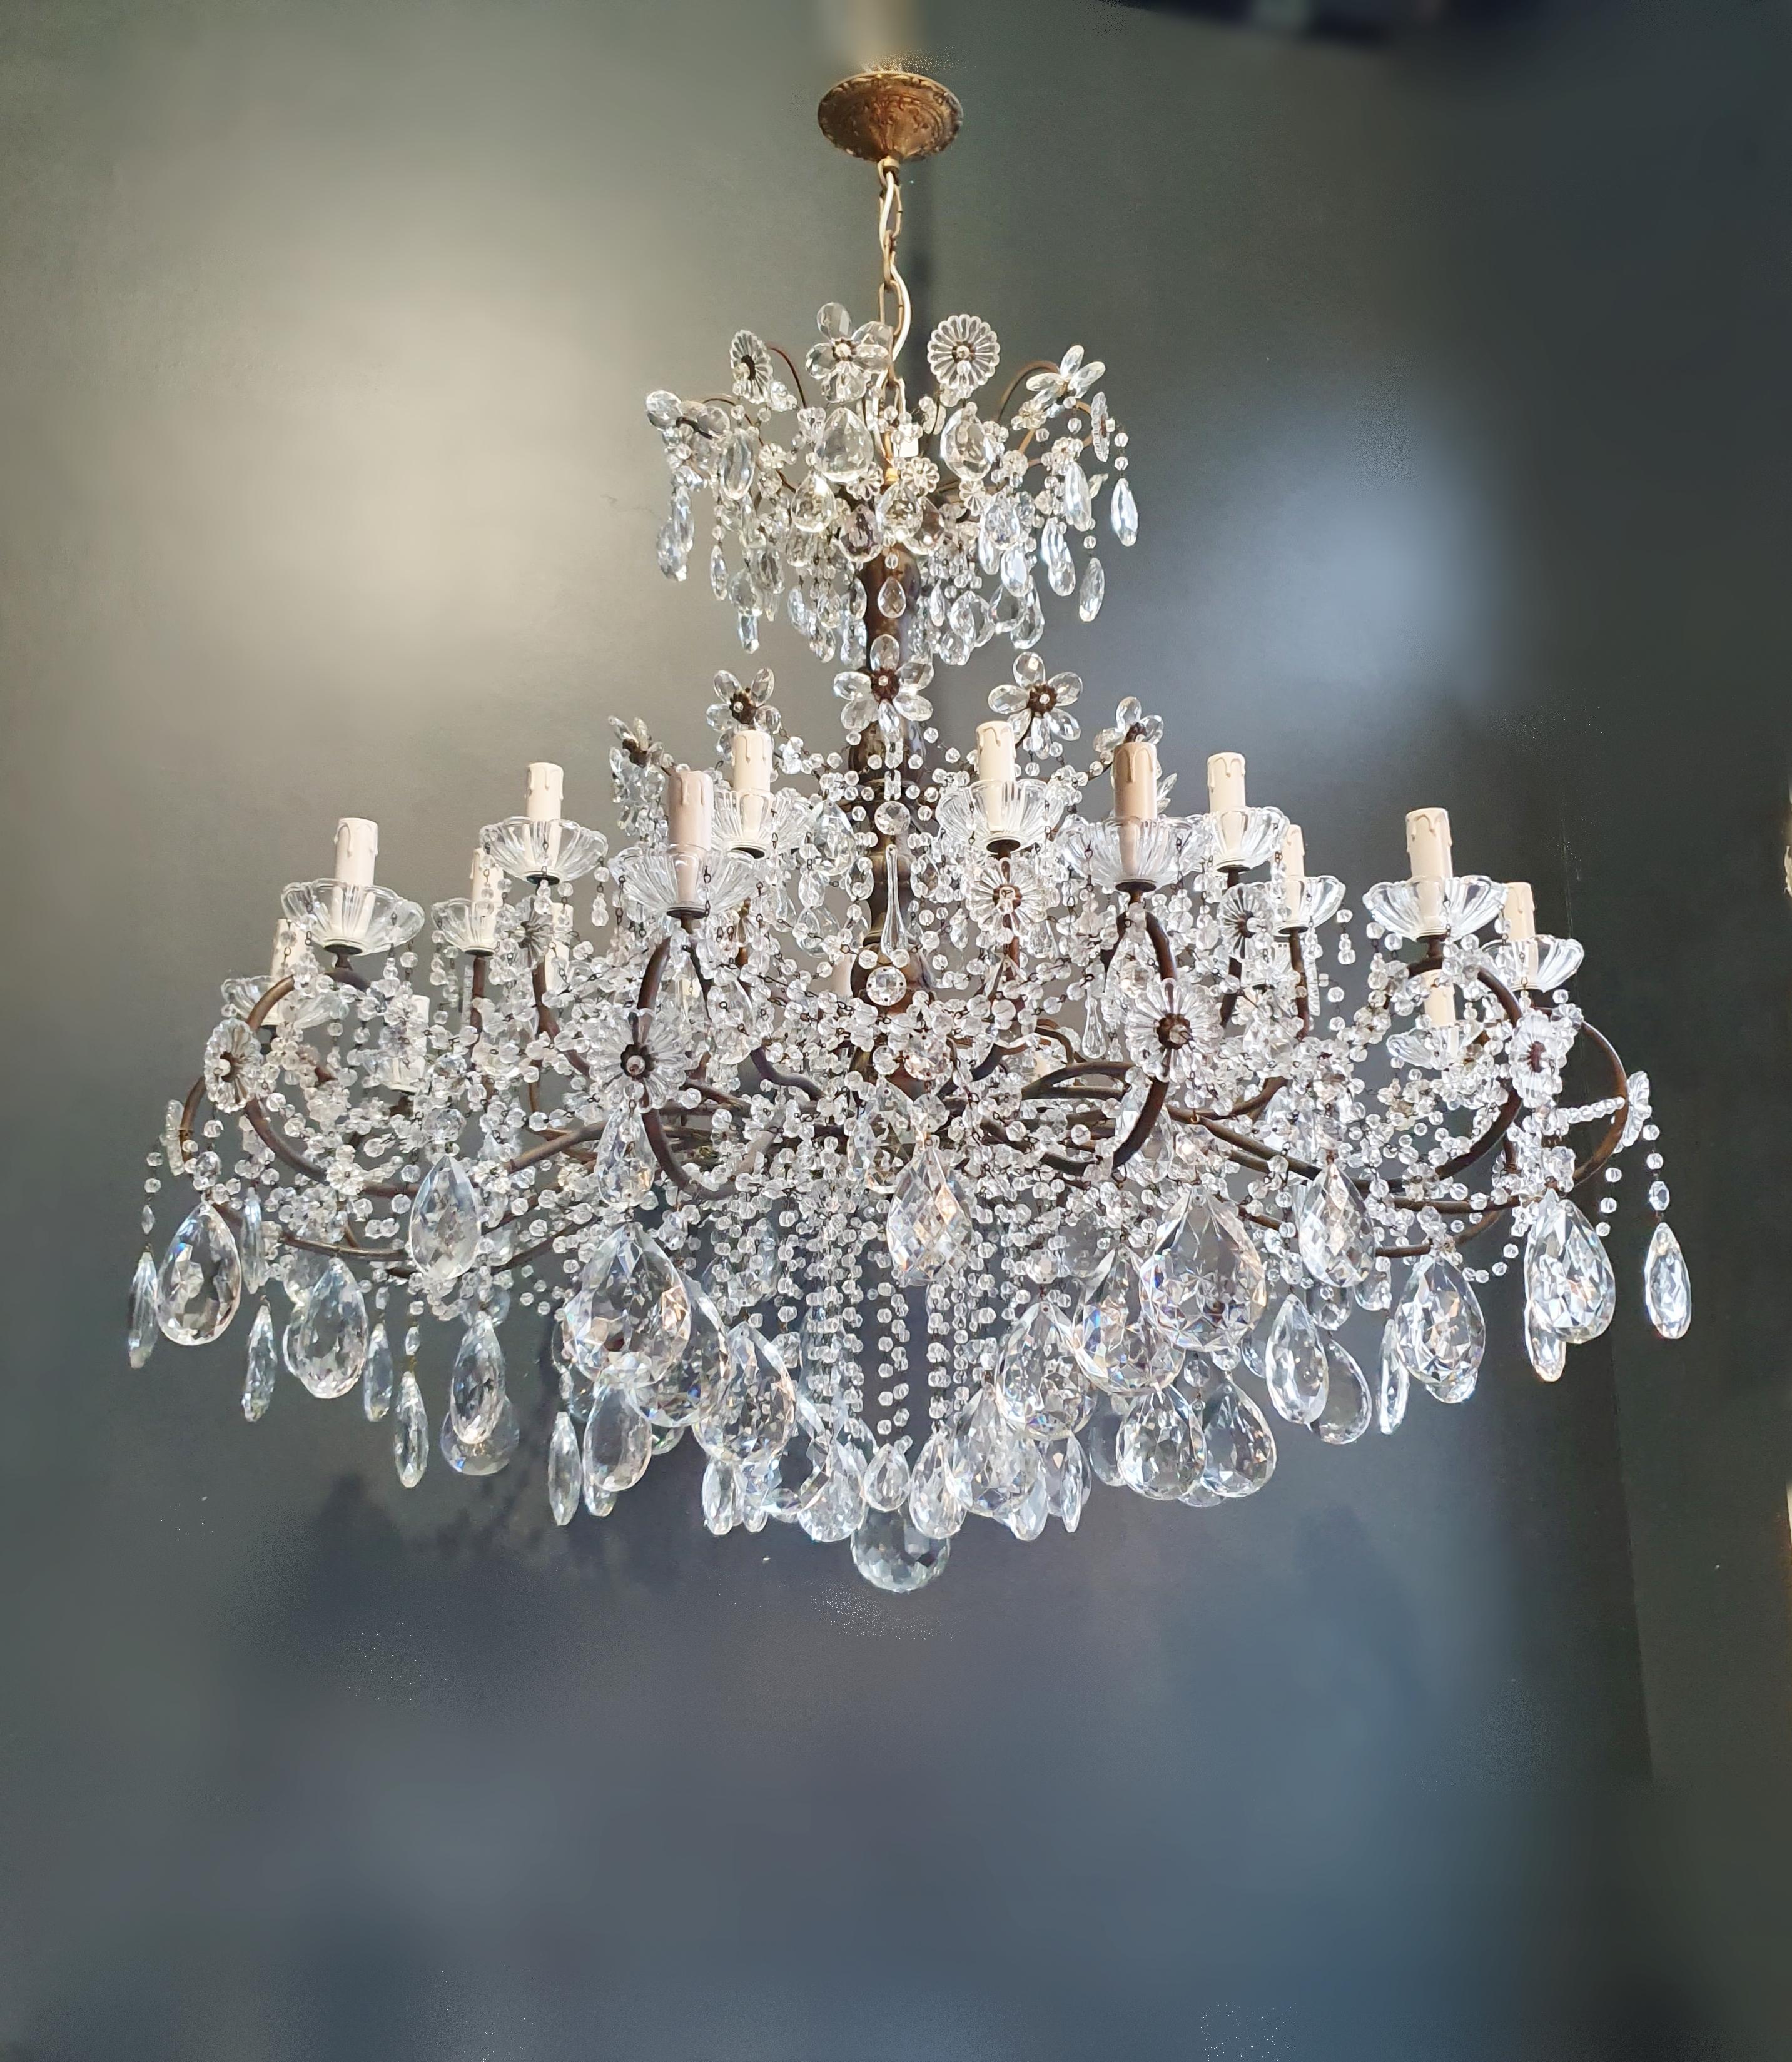 Hand-Knotted Huge Candelabrum Crystal Antique Chandelier Ceiling Lustre Art Nouveau For Sale